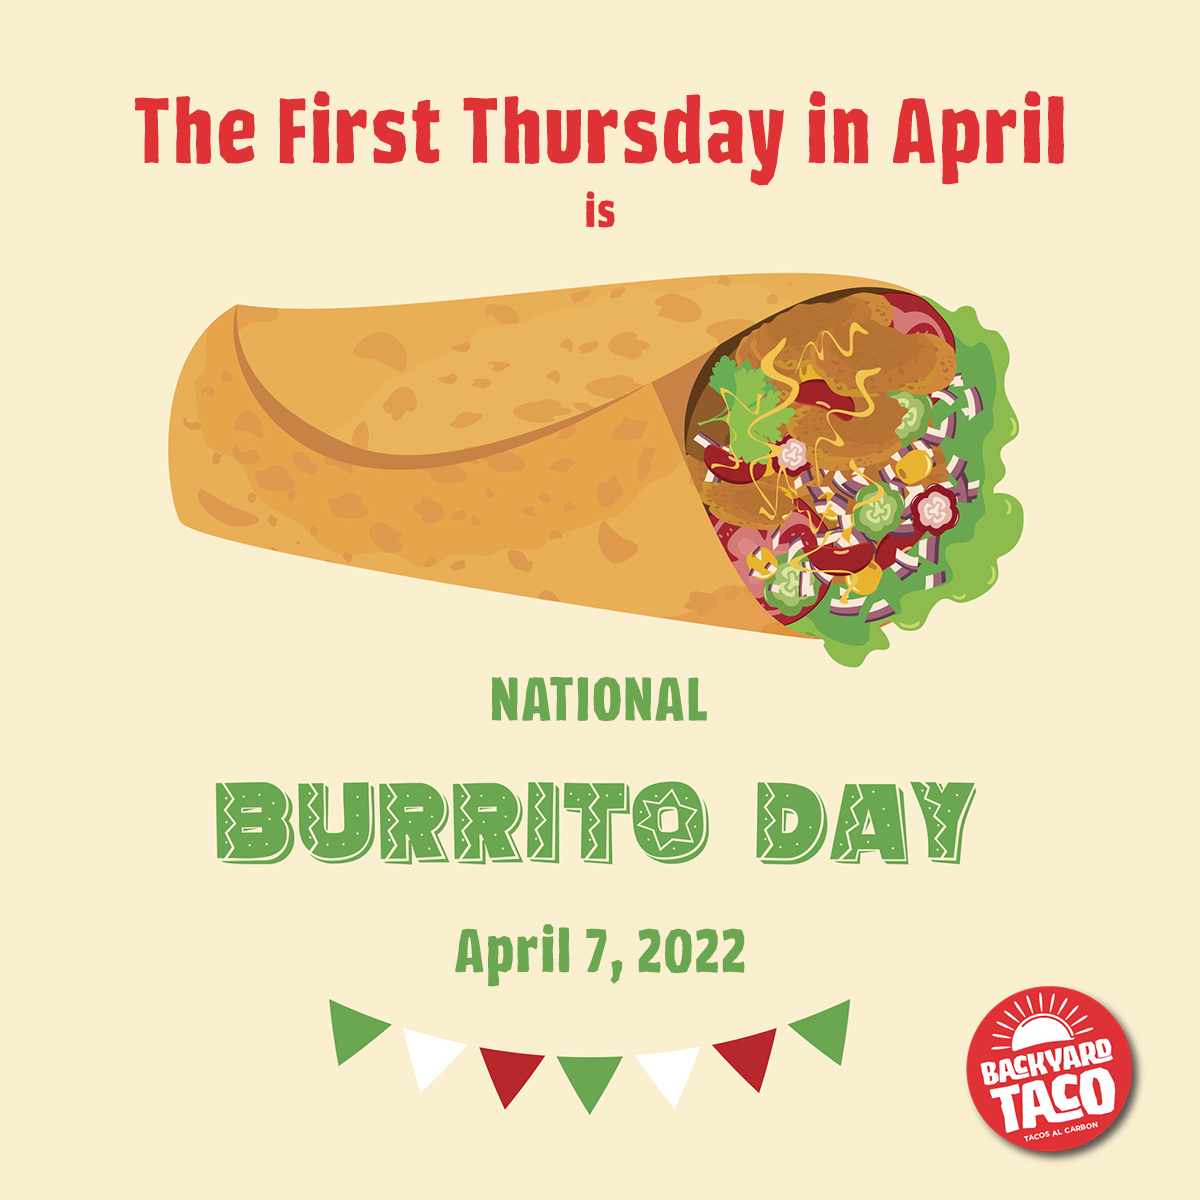 National Burrito Day